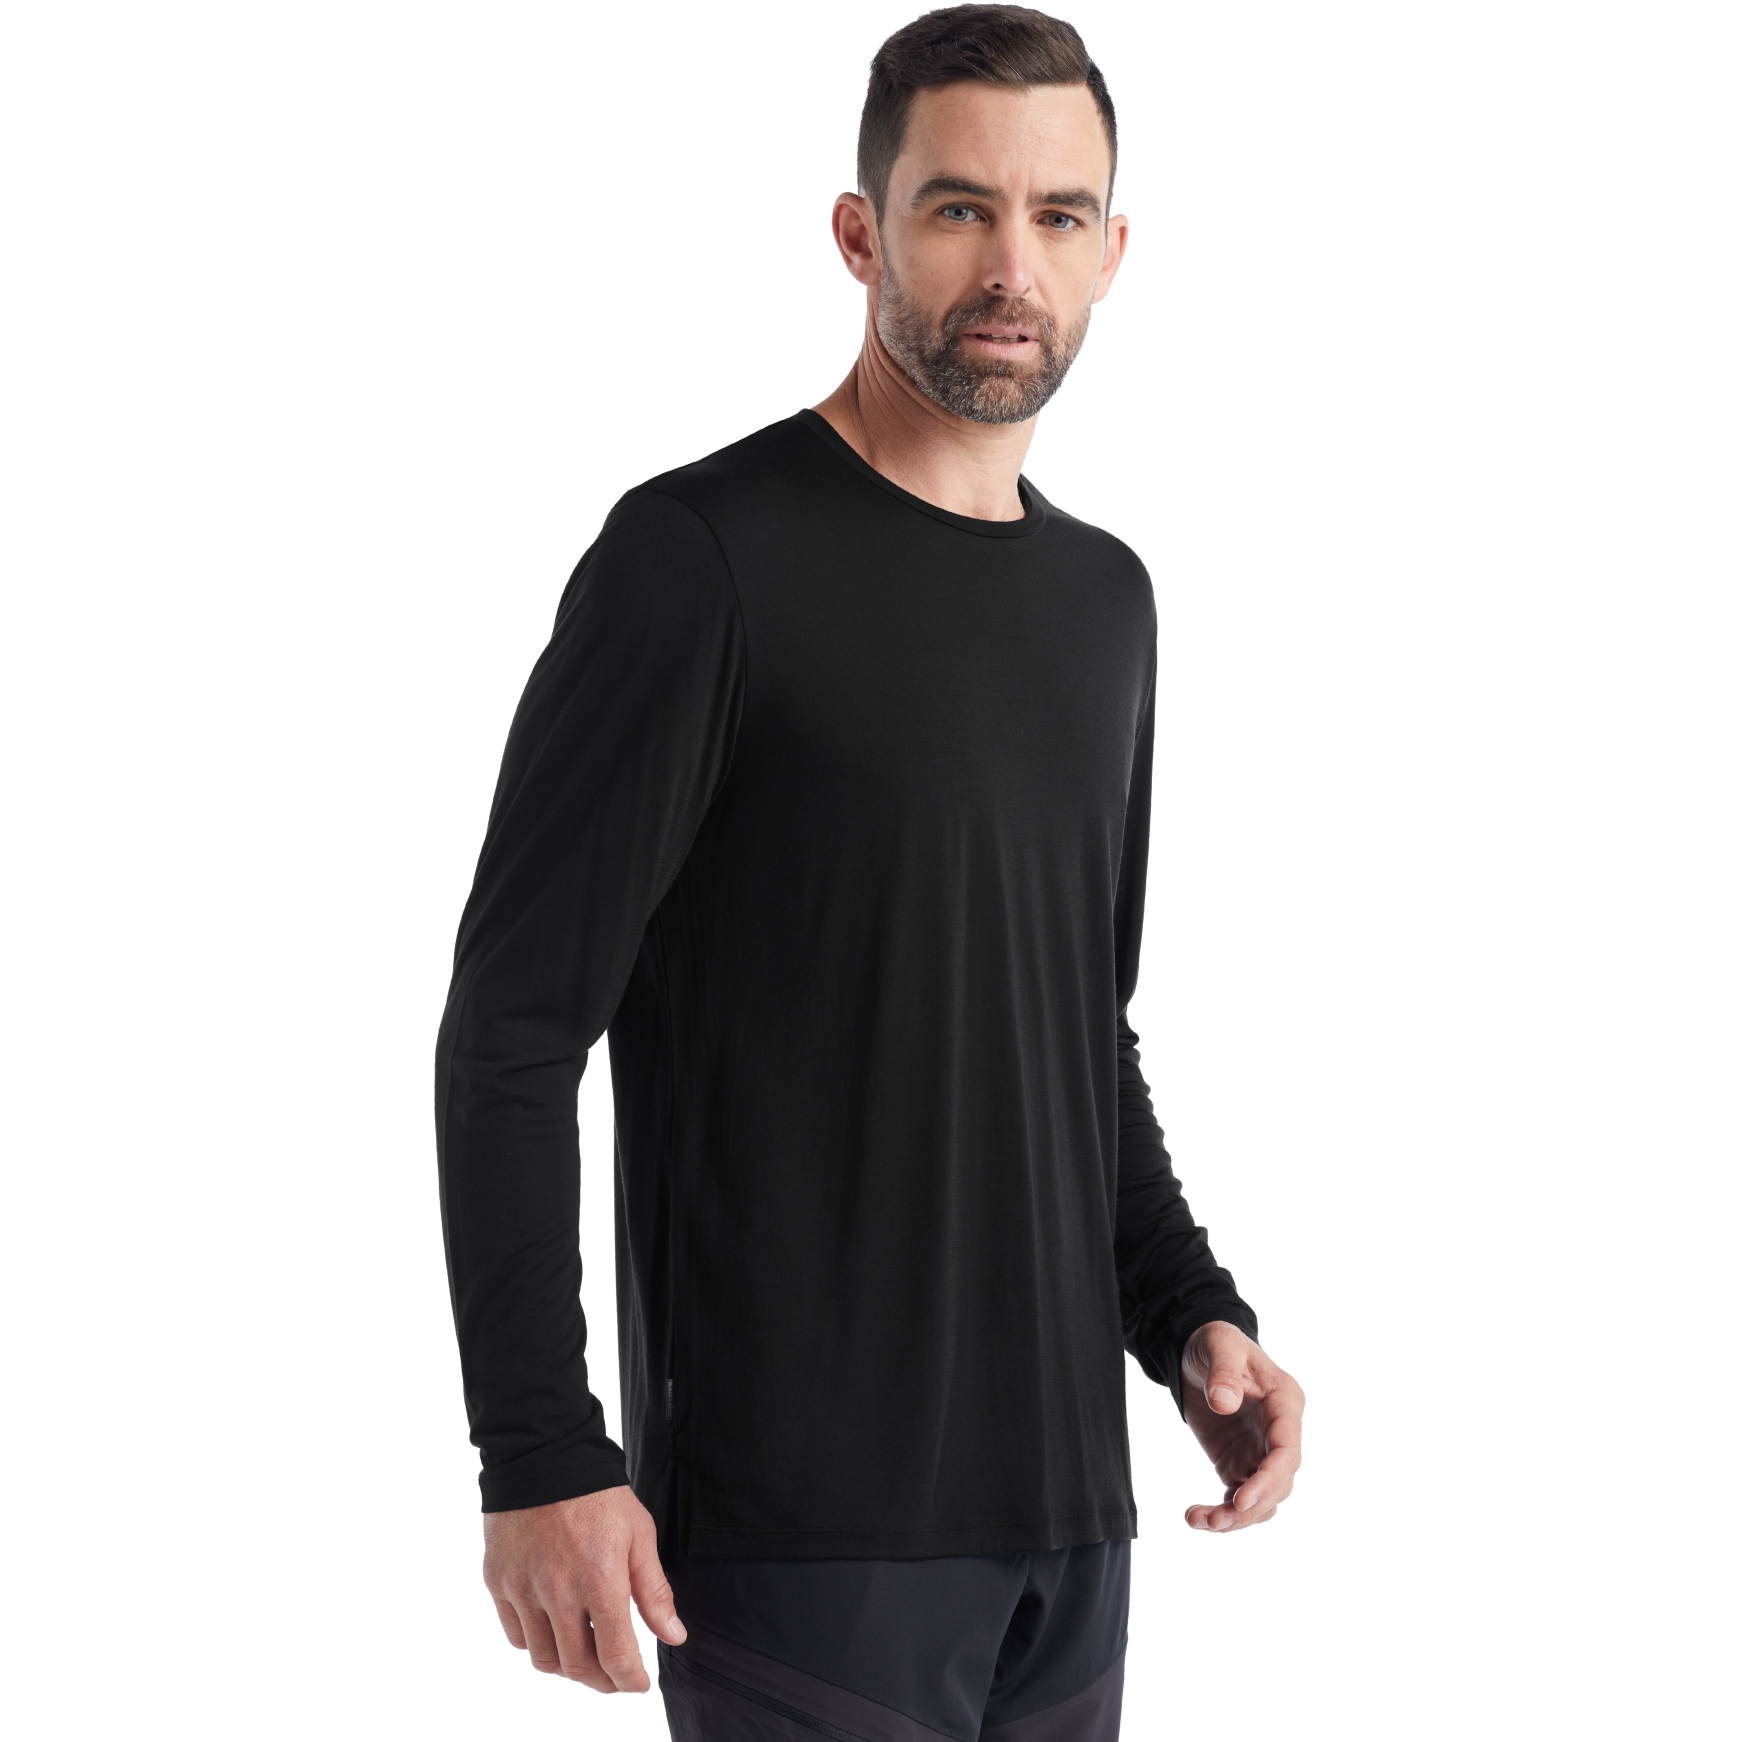 Productfoto van Icebreaker Sphere II Shirt met Lange Mouwen Heren - Zwart